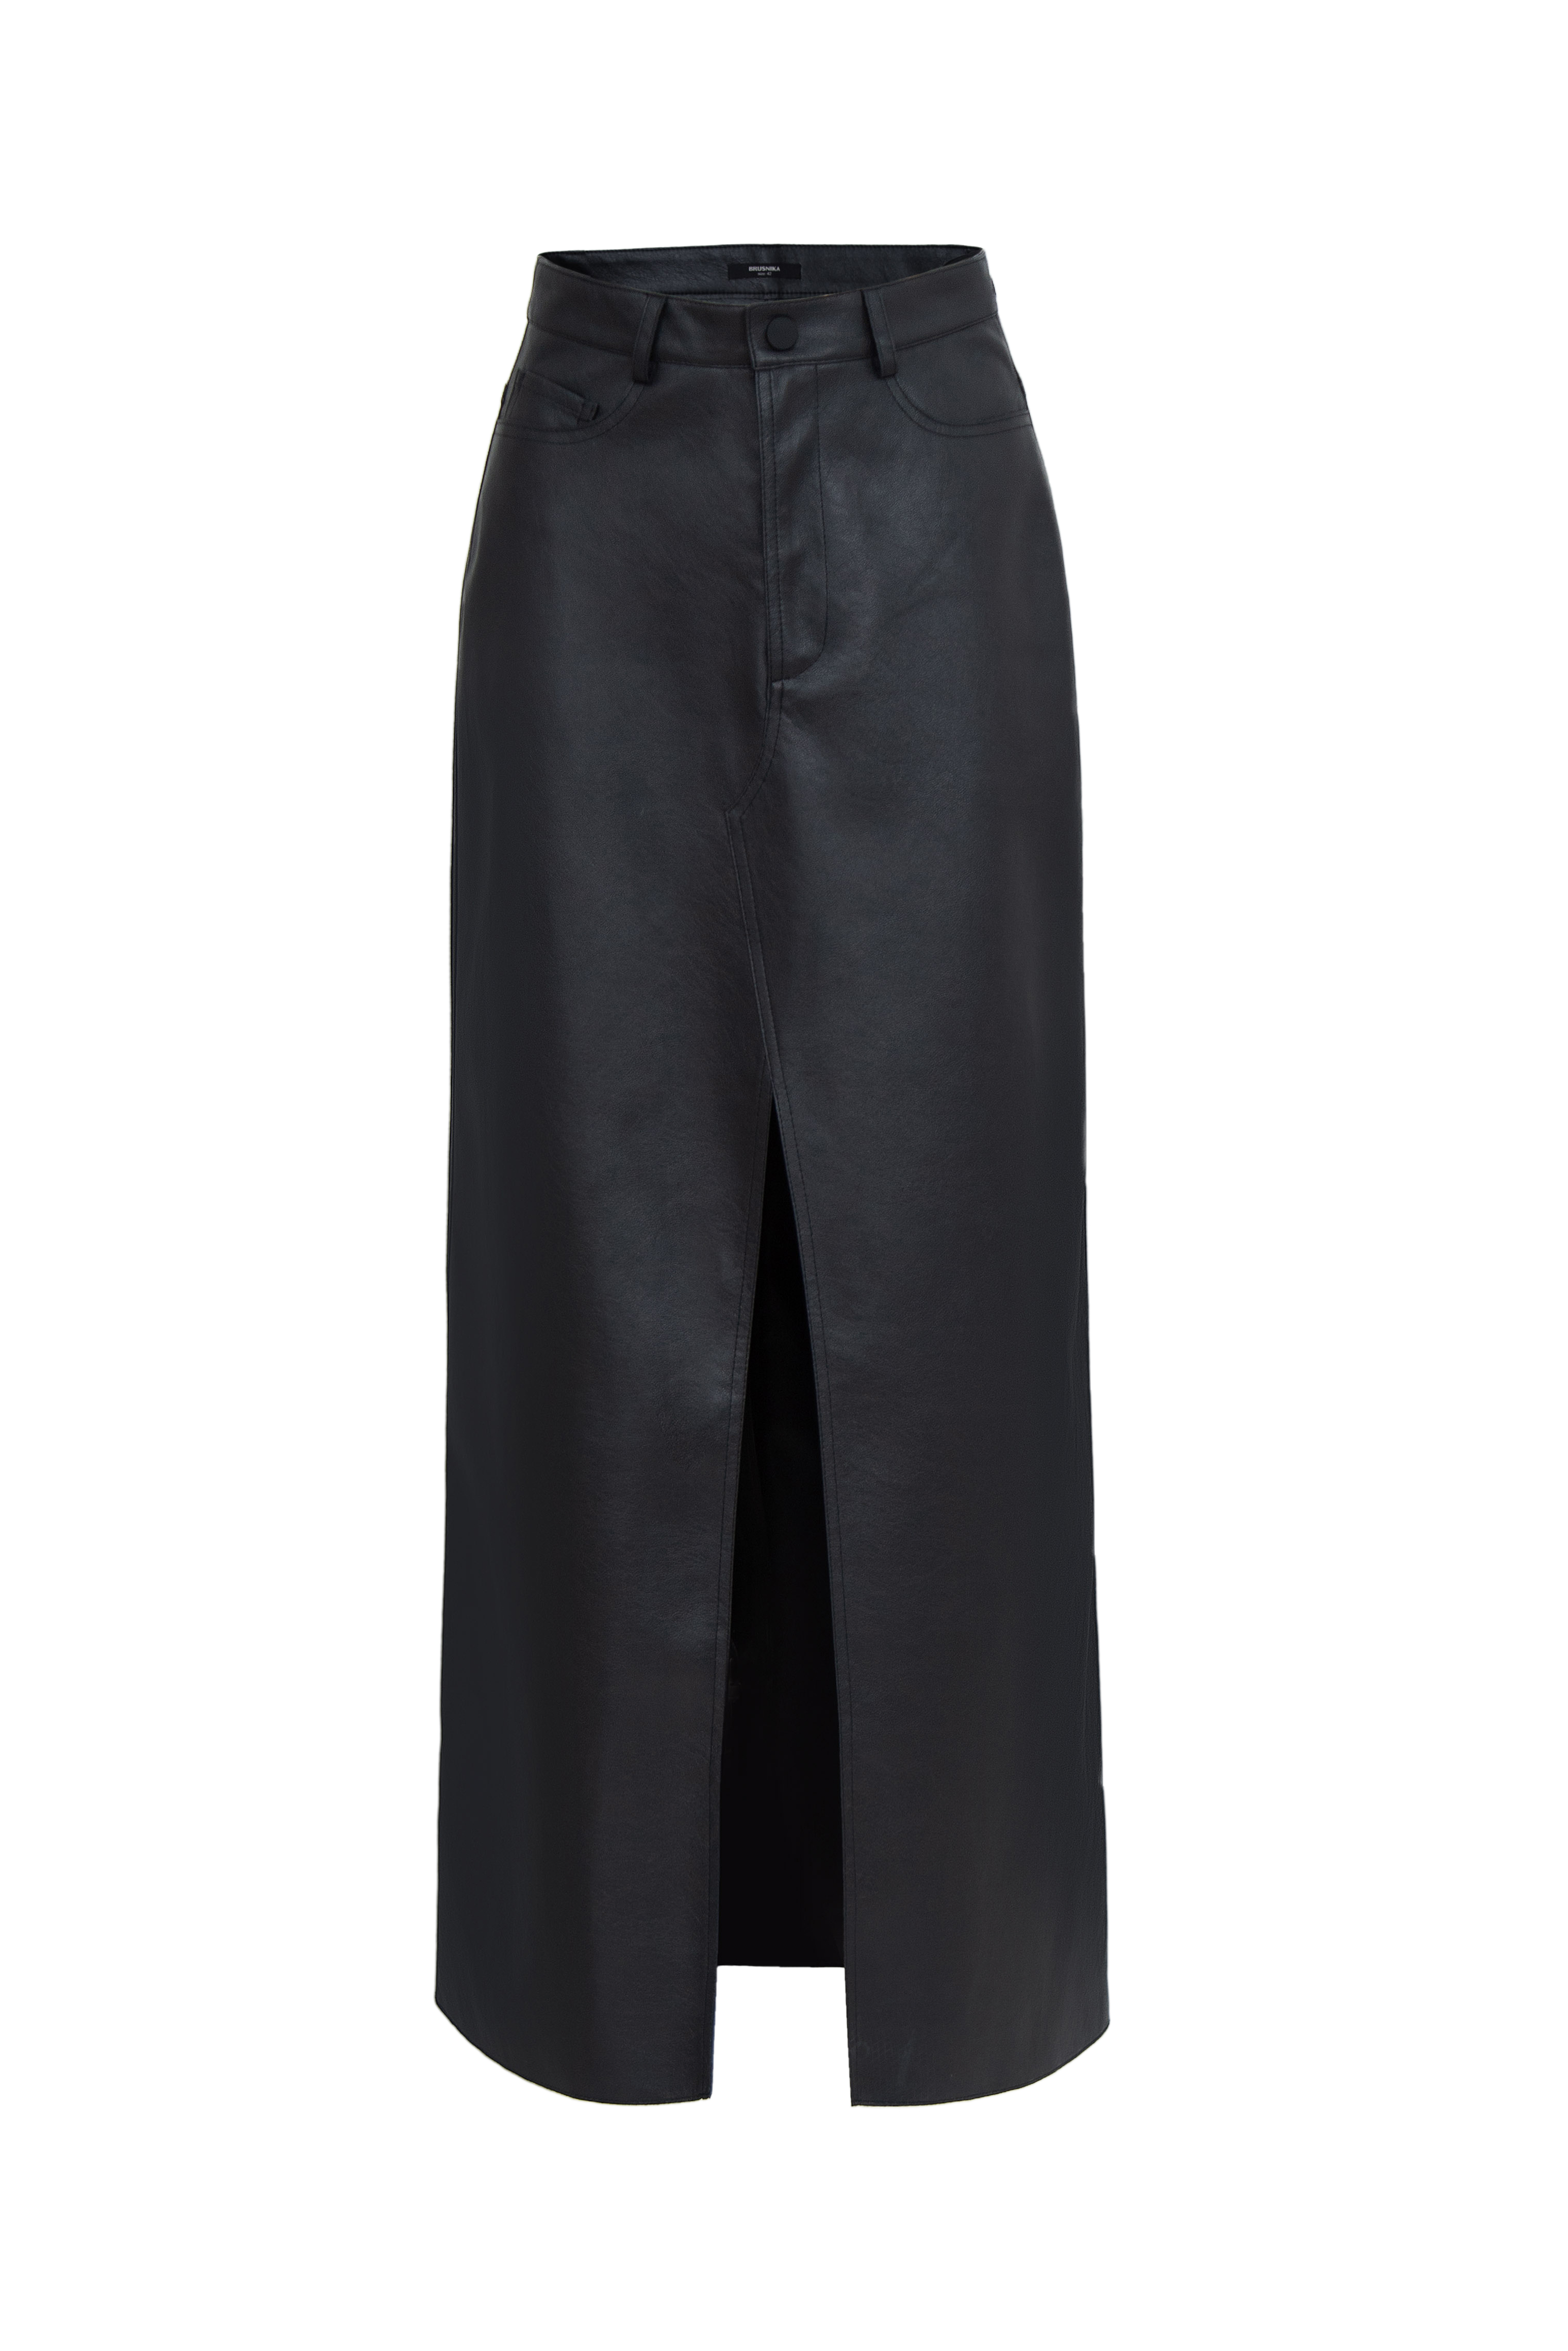 Skirt 4549-01 Black from BRUSNiKA